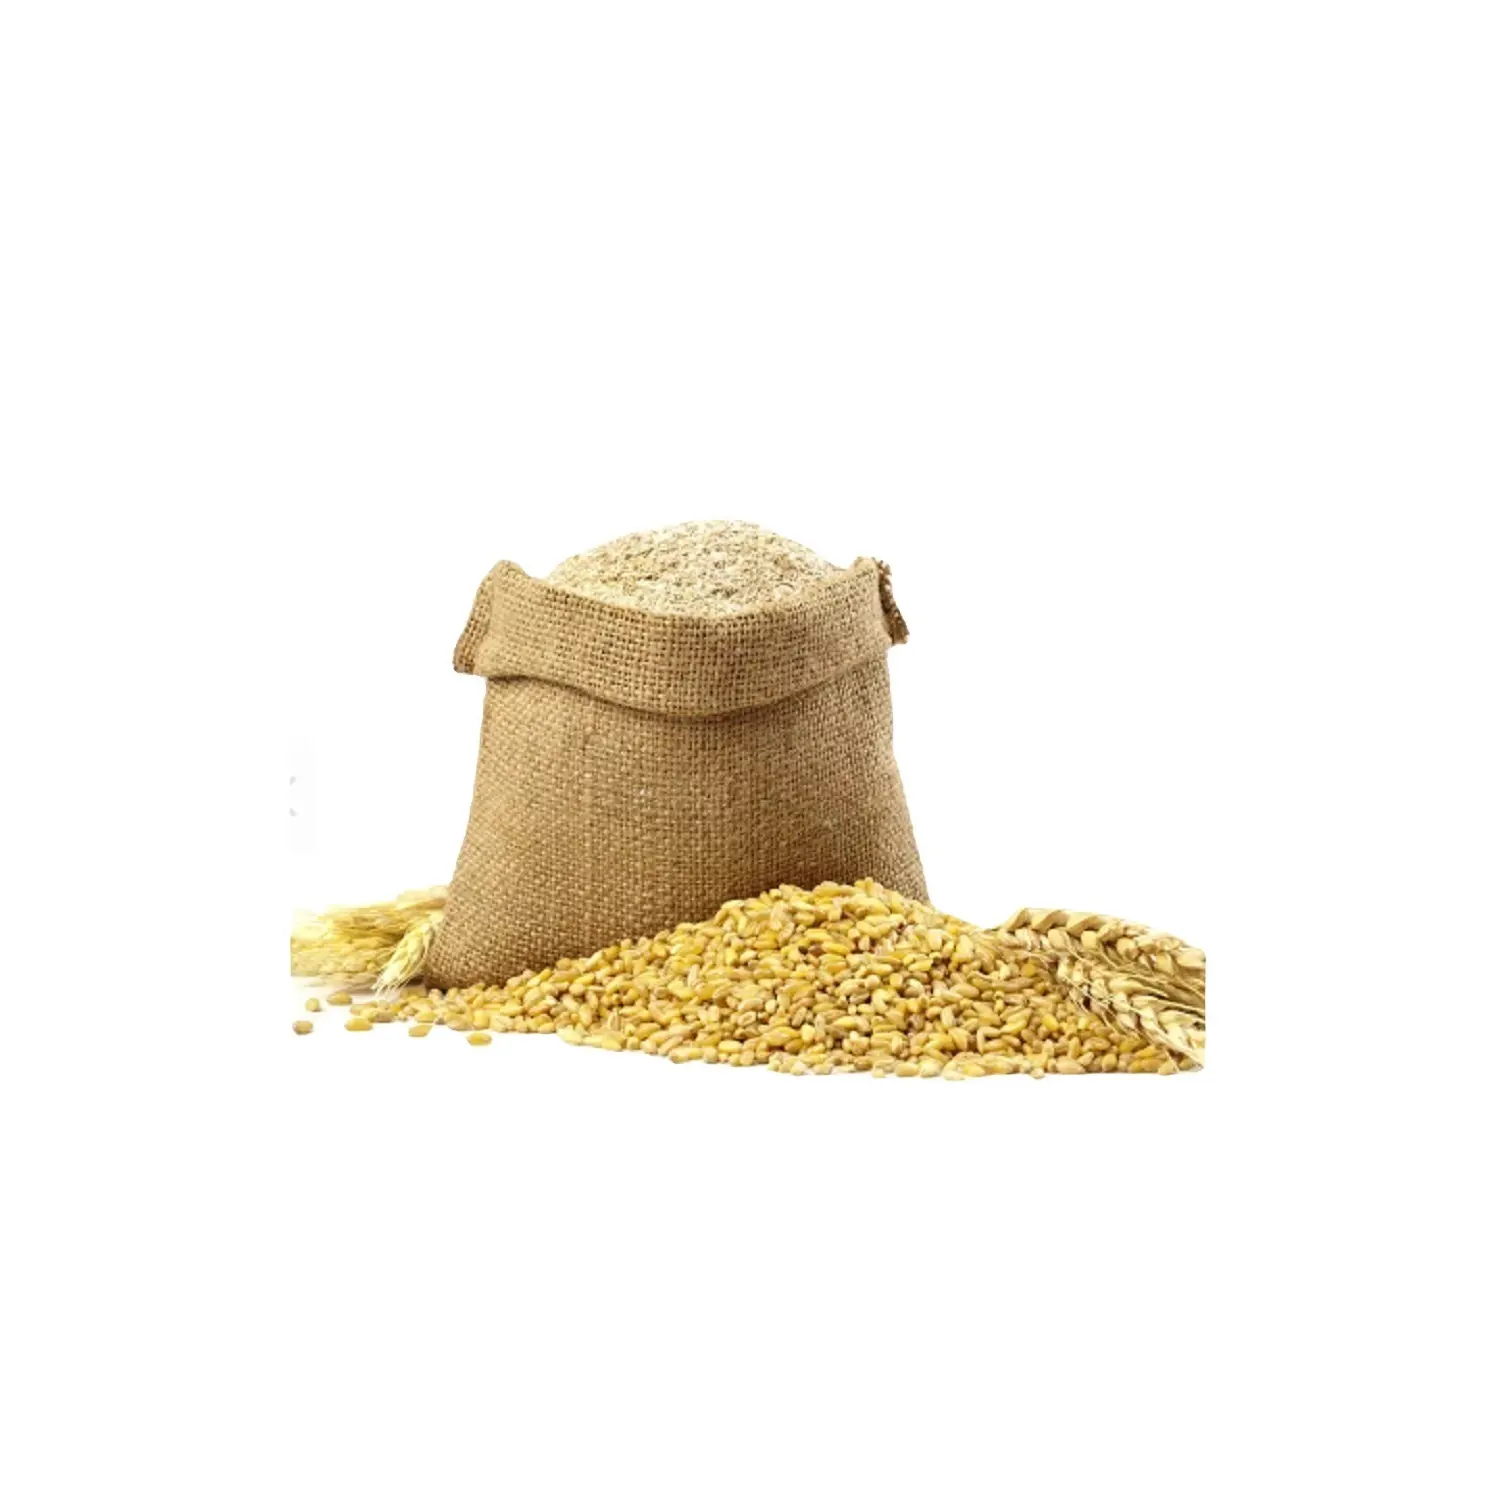 Питательный протеин для пшеницы, с 80% протеином, 50 кг в упаковке, 25 тонн, 15 дней